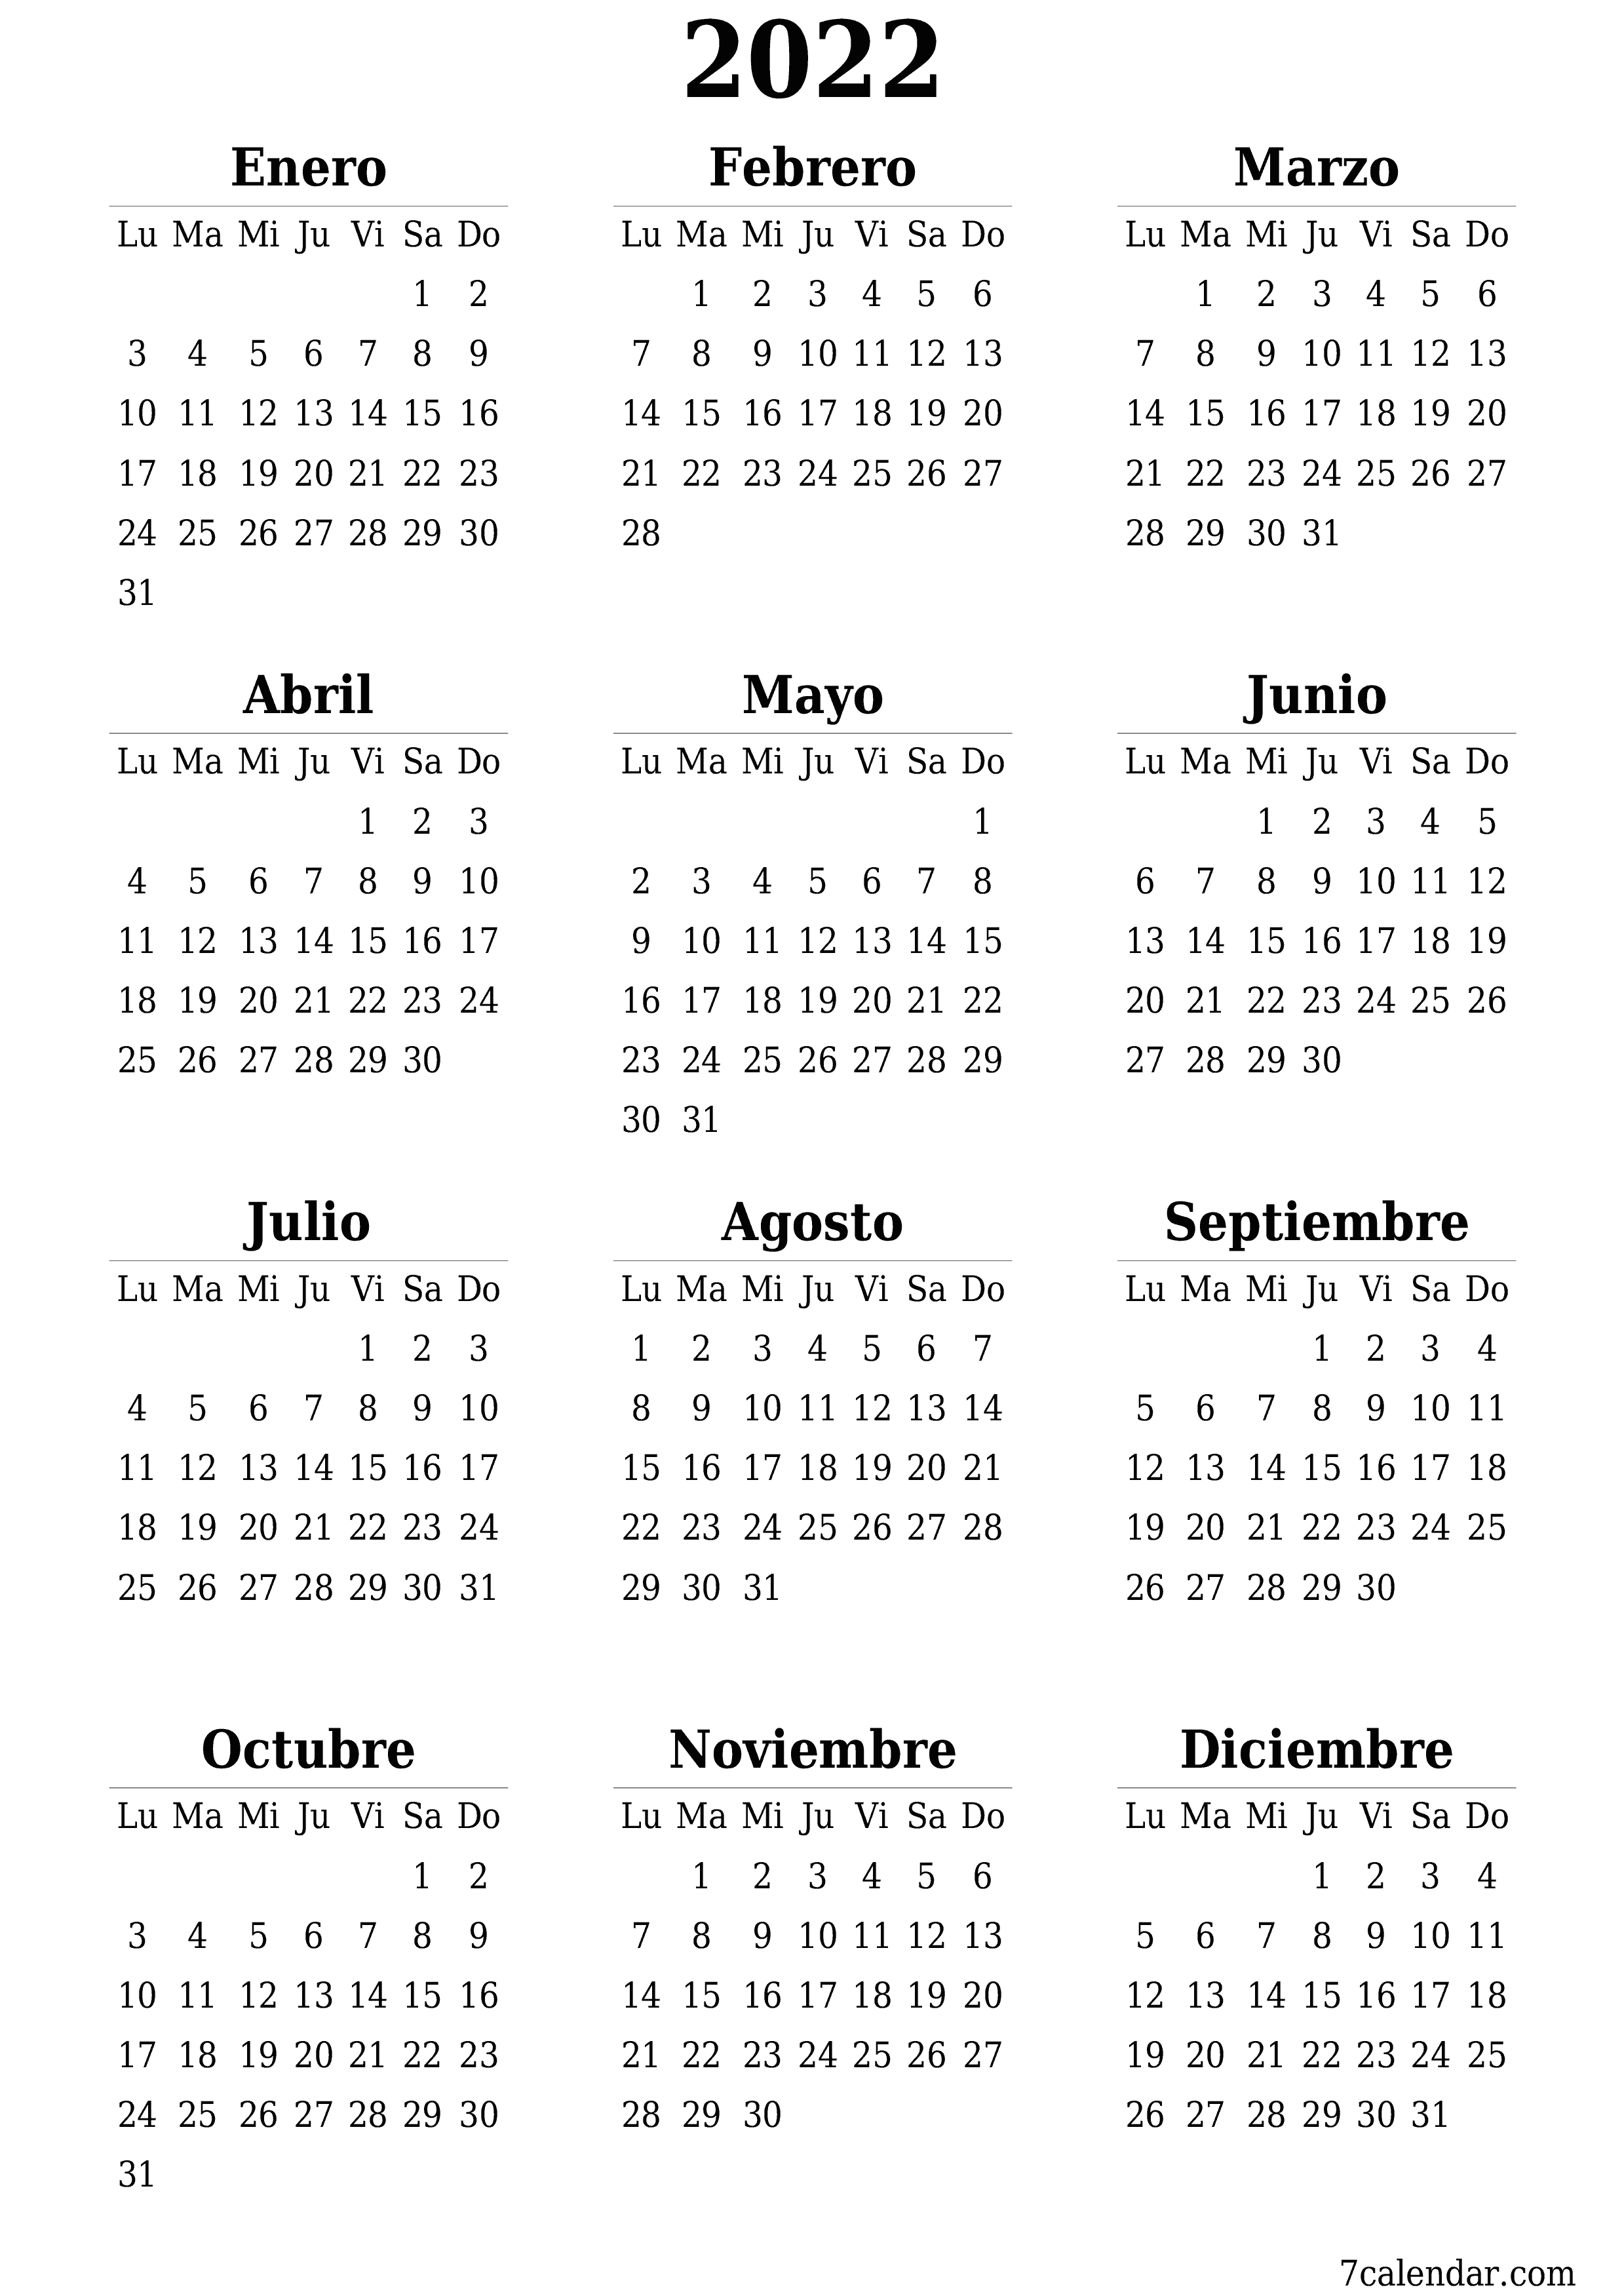 Calendario anual en blanco para el año 2022 guardar e imprimir en PDF PNG Spanish - 7calendar.com